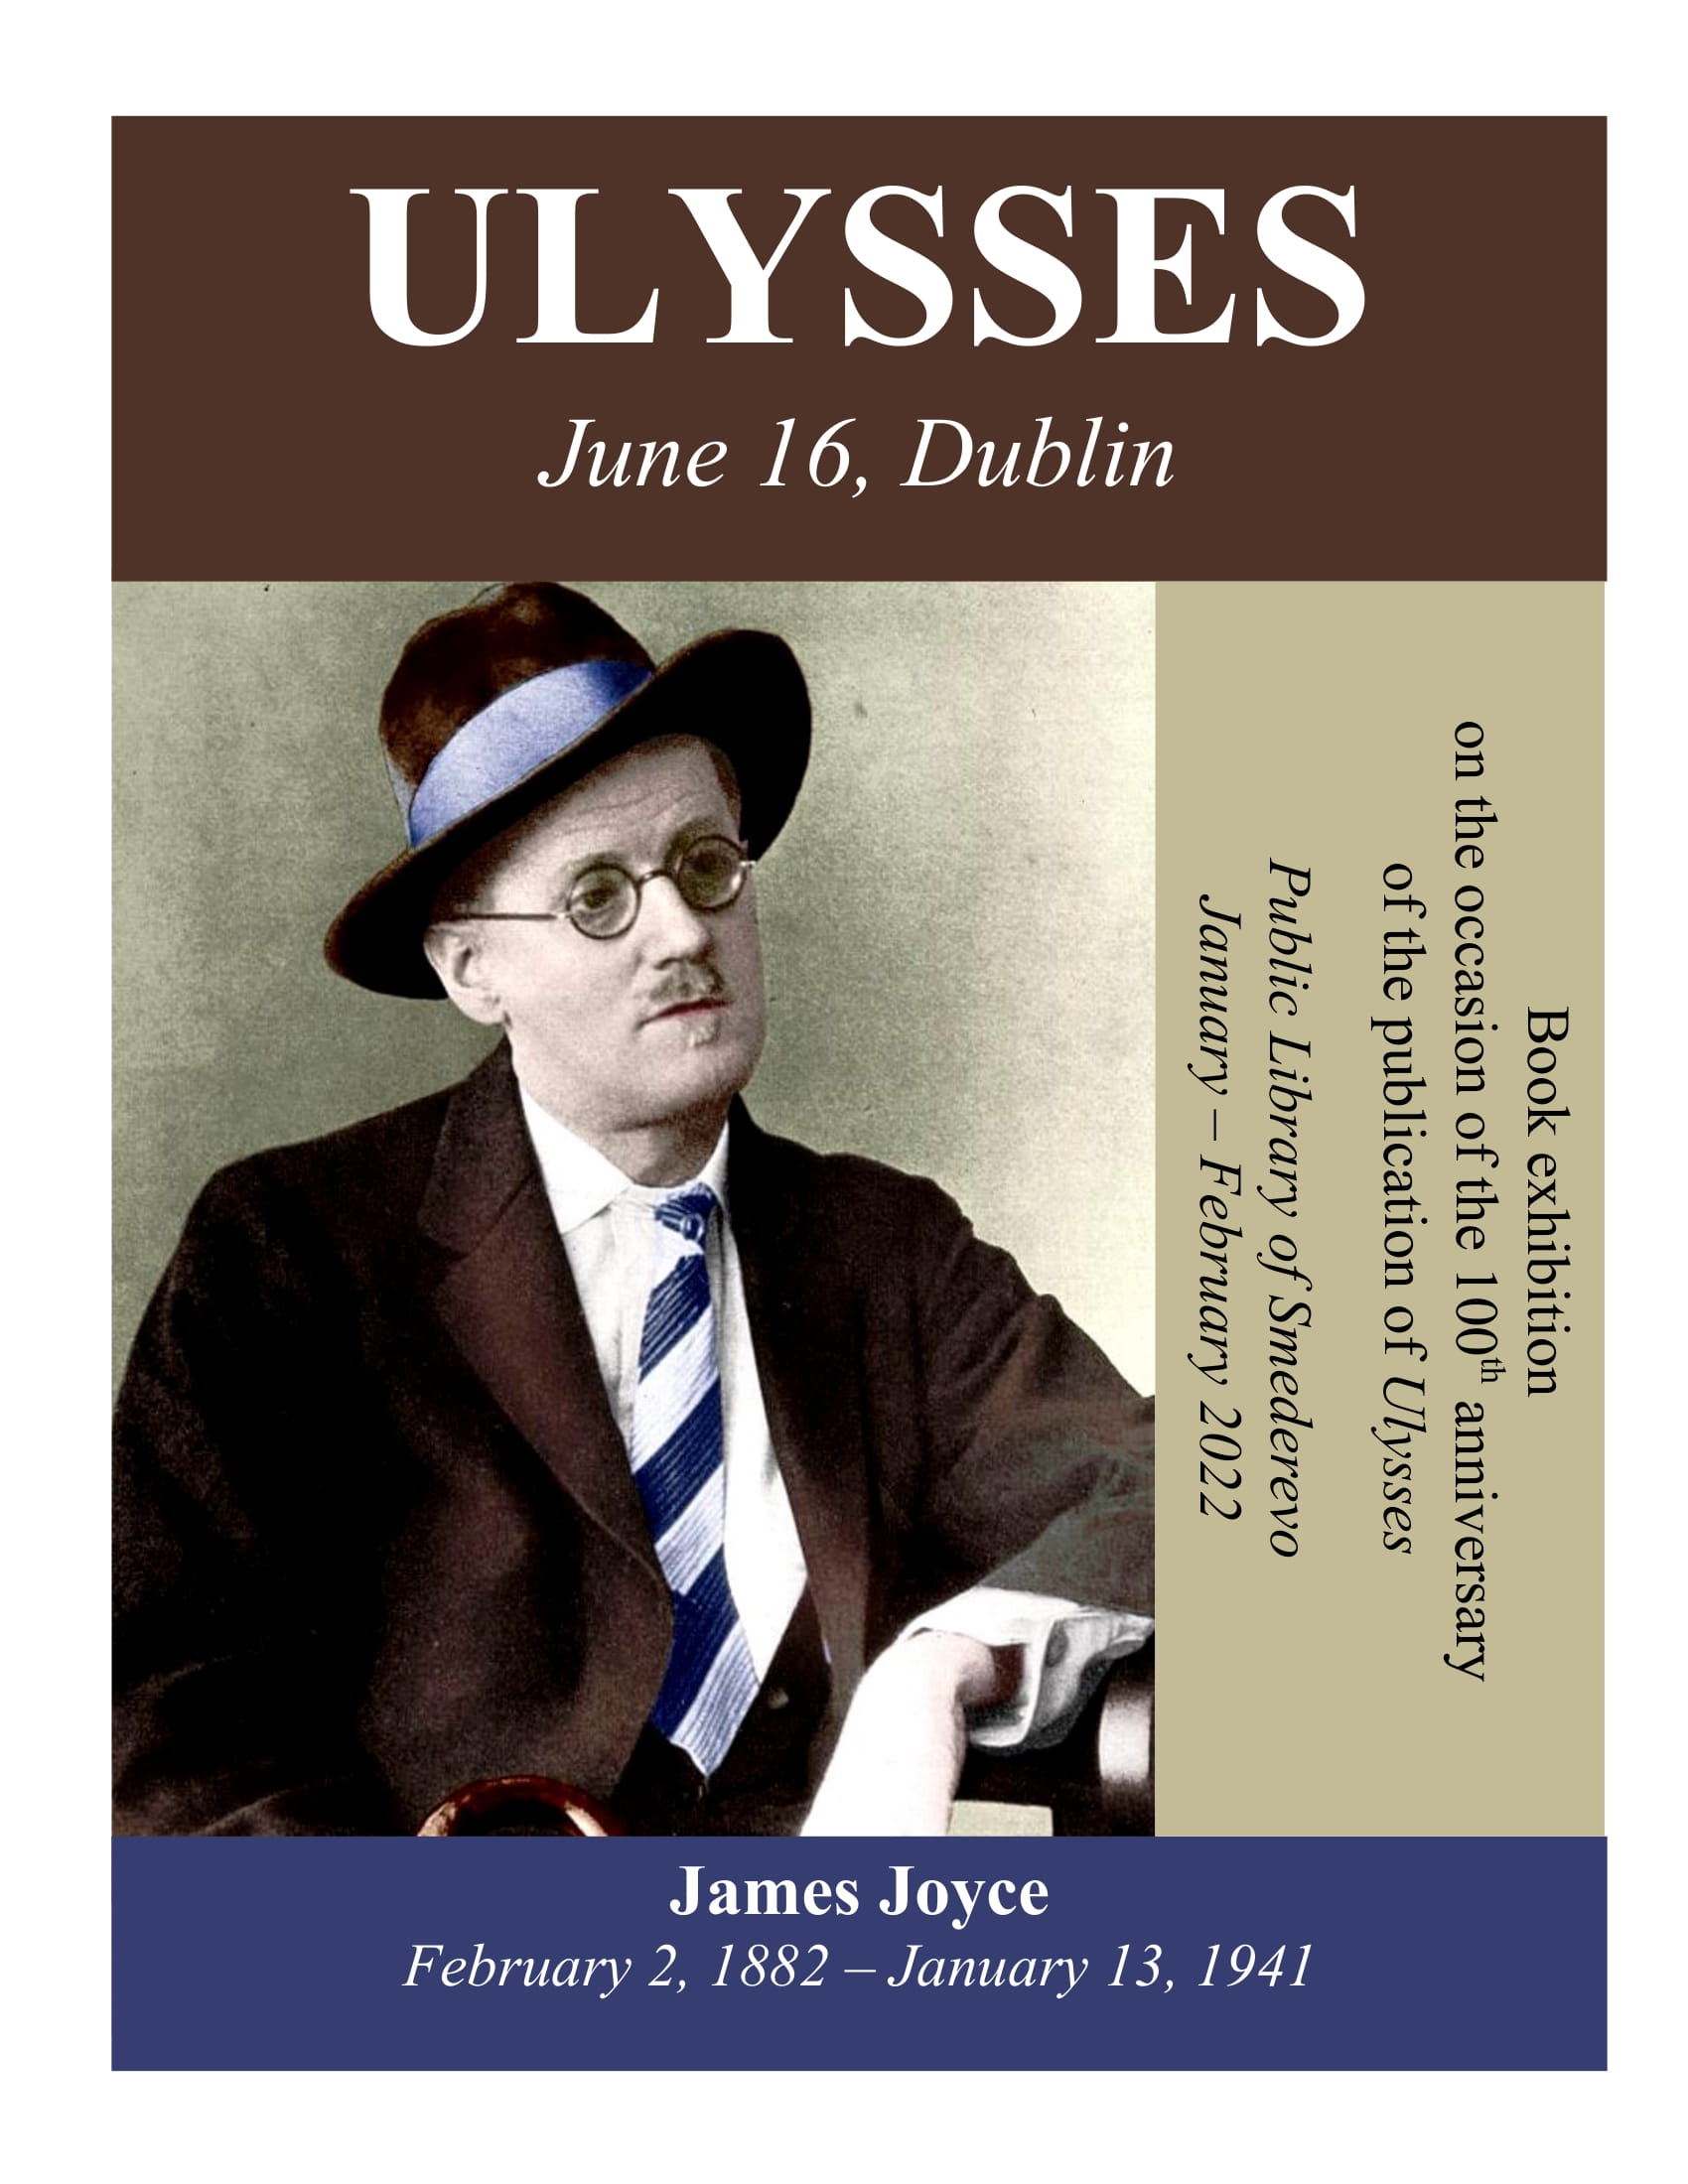 James Joyce - plakat 1-1